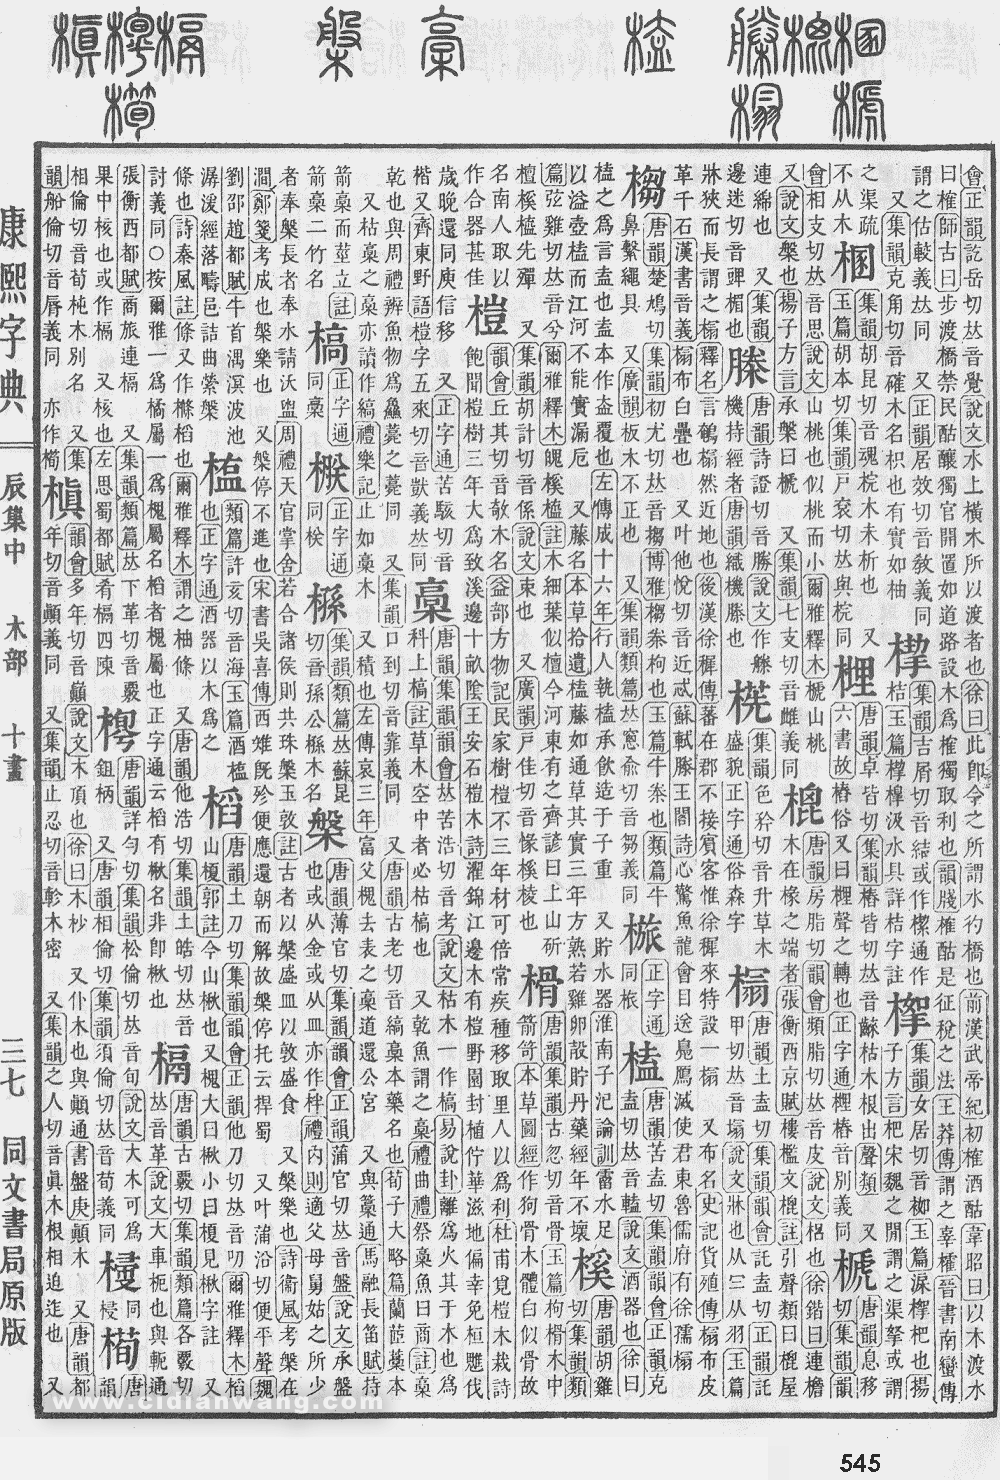 康熙字典掃描版第545頁